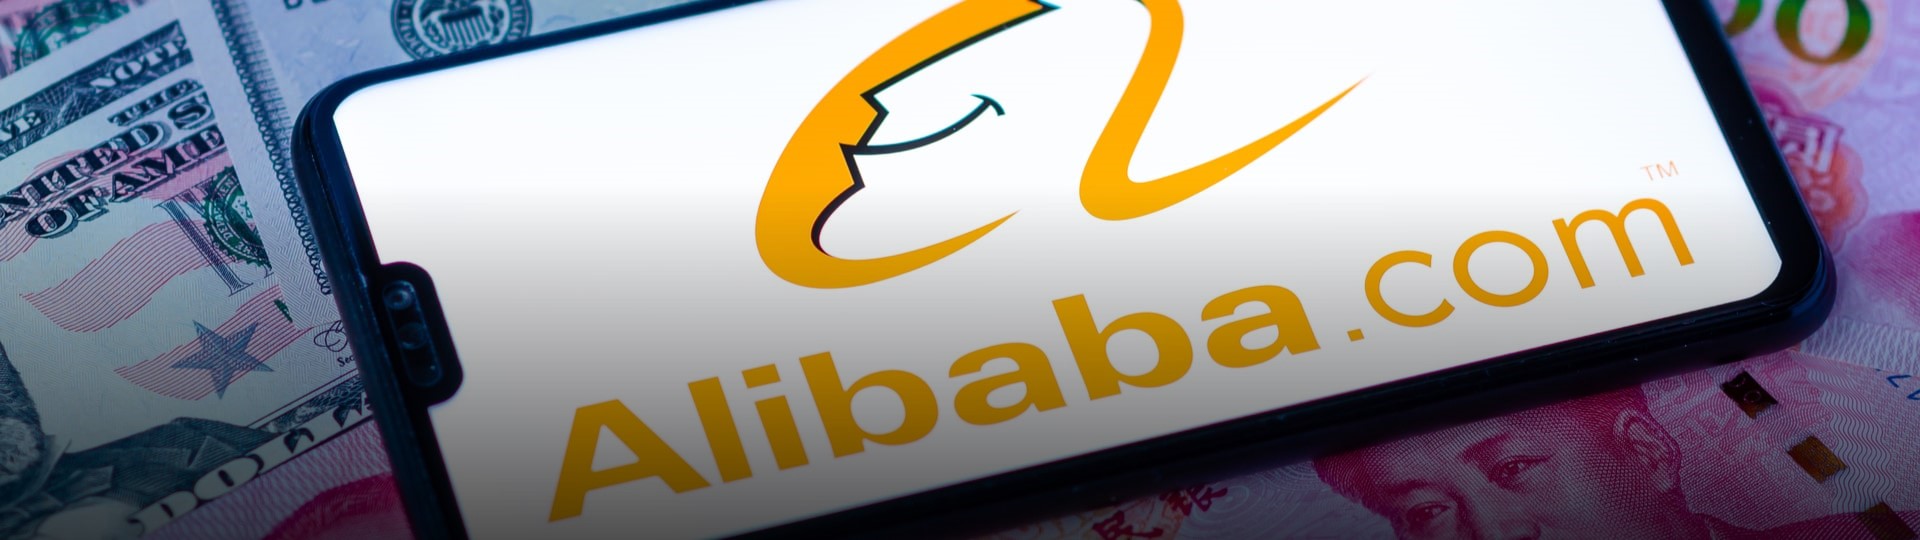 Firmě Alibaba hrozí v Číně rekordní pokuta